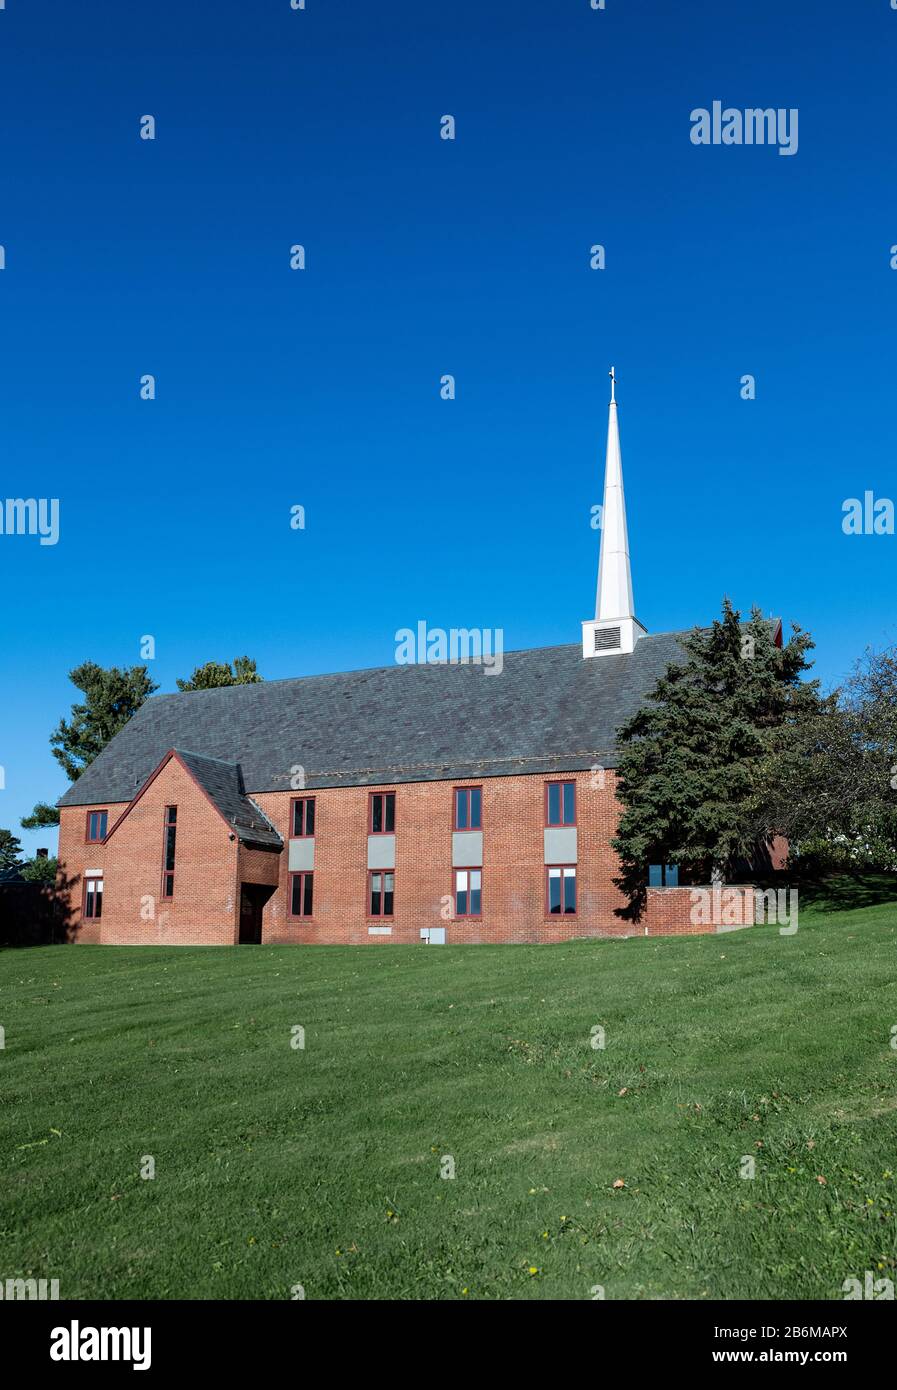 Salisbury School chapel, Salisbury, Connecticut, USA. Stock Photo